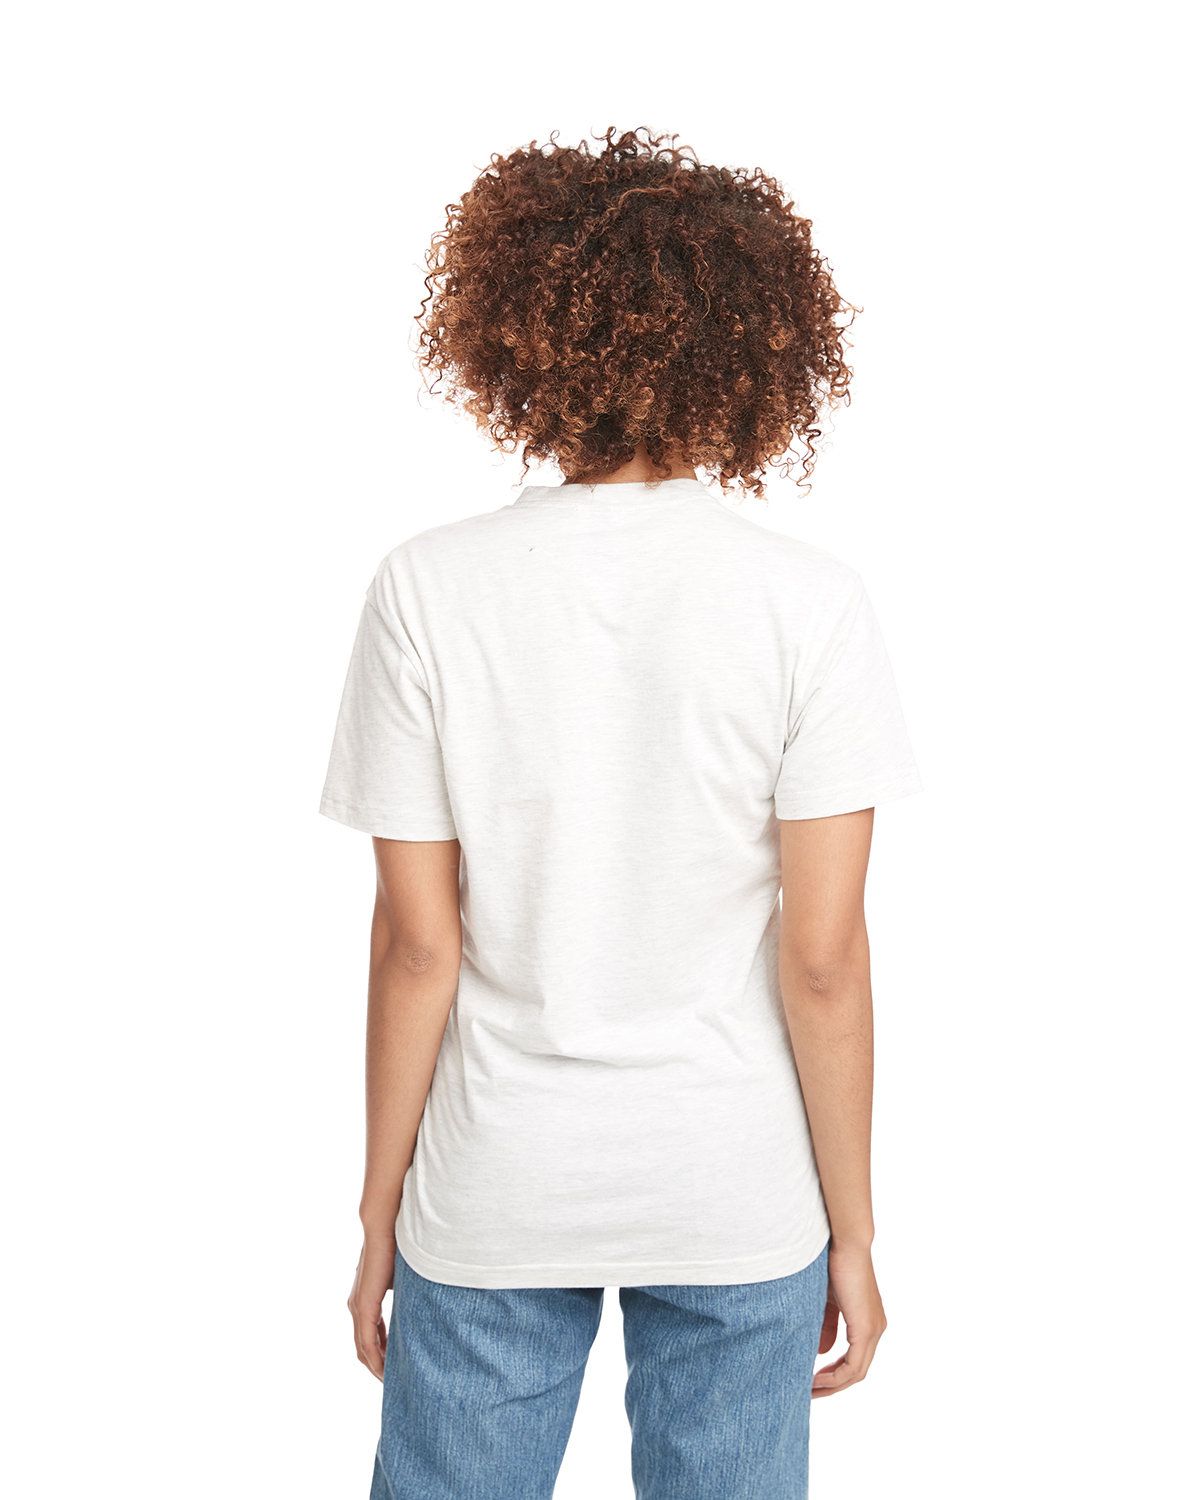 'Next Level 3600 Unisex Cotton T Shirt'